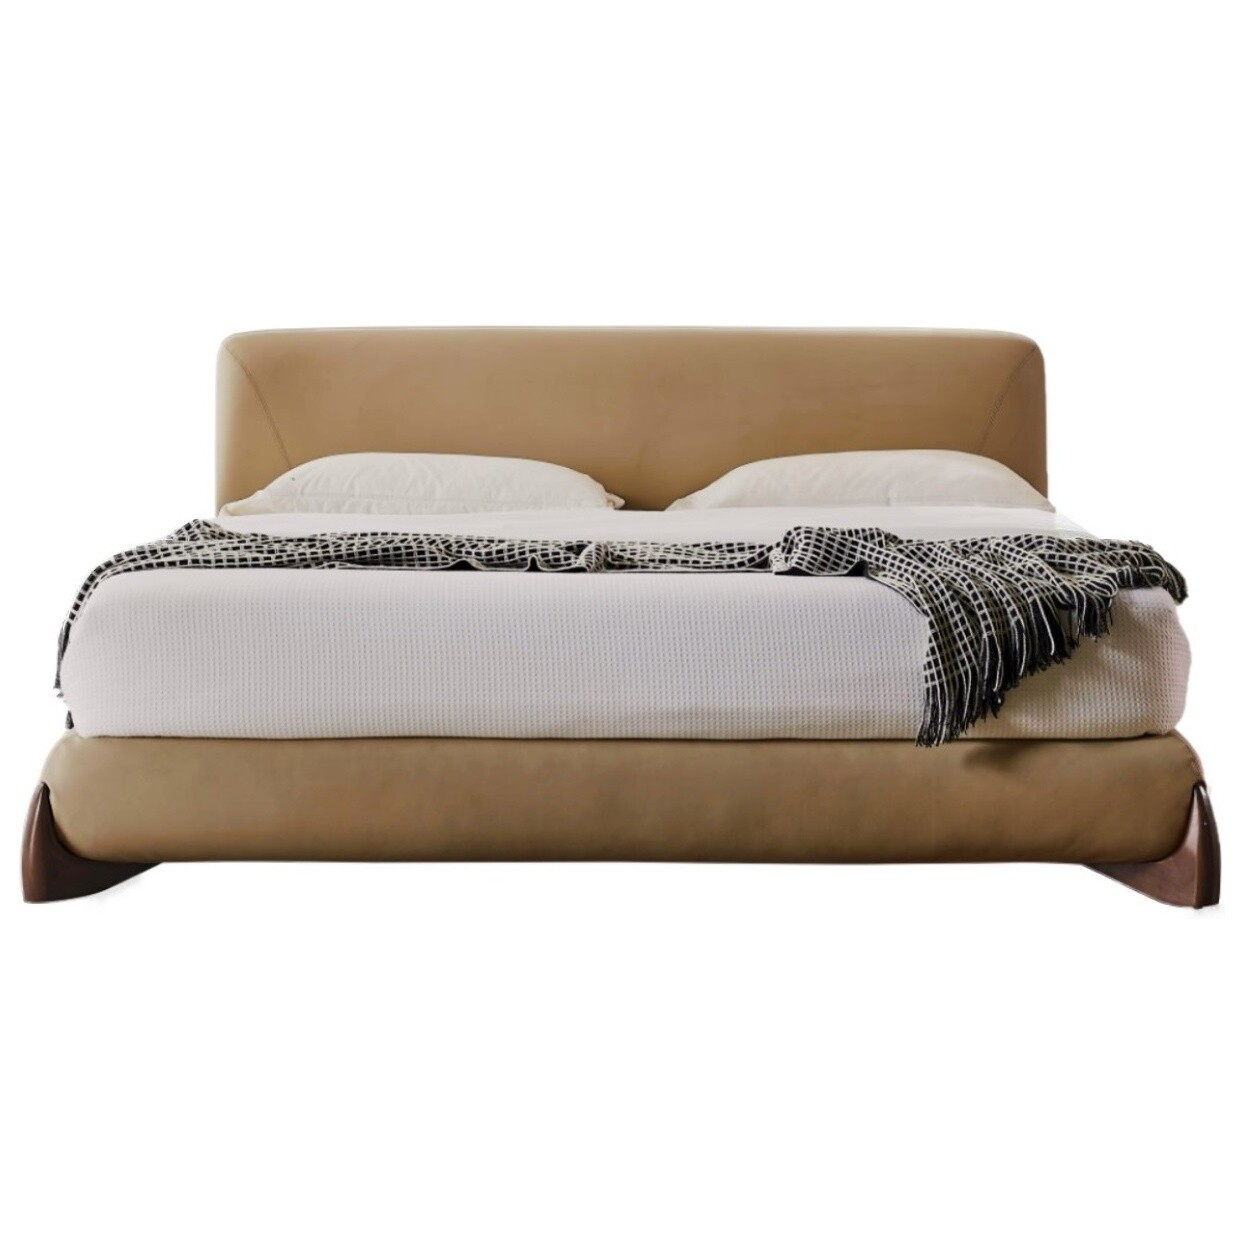 Кровать двуспальная с мягким изголовьем 180х200 см коричневая Softbay M